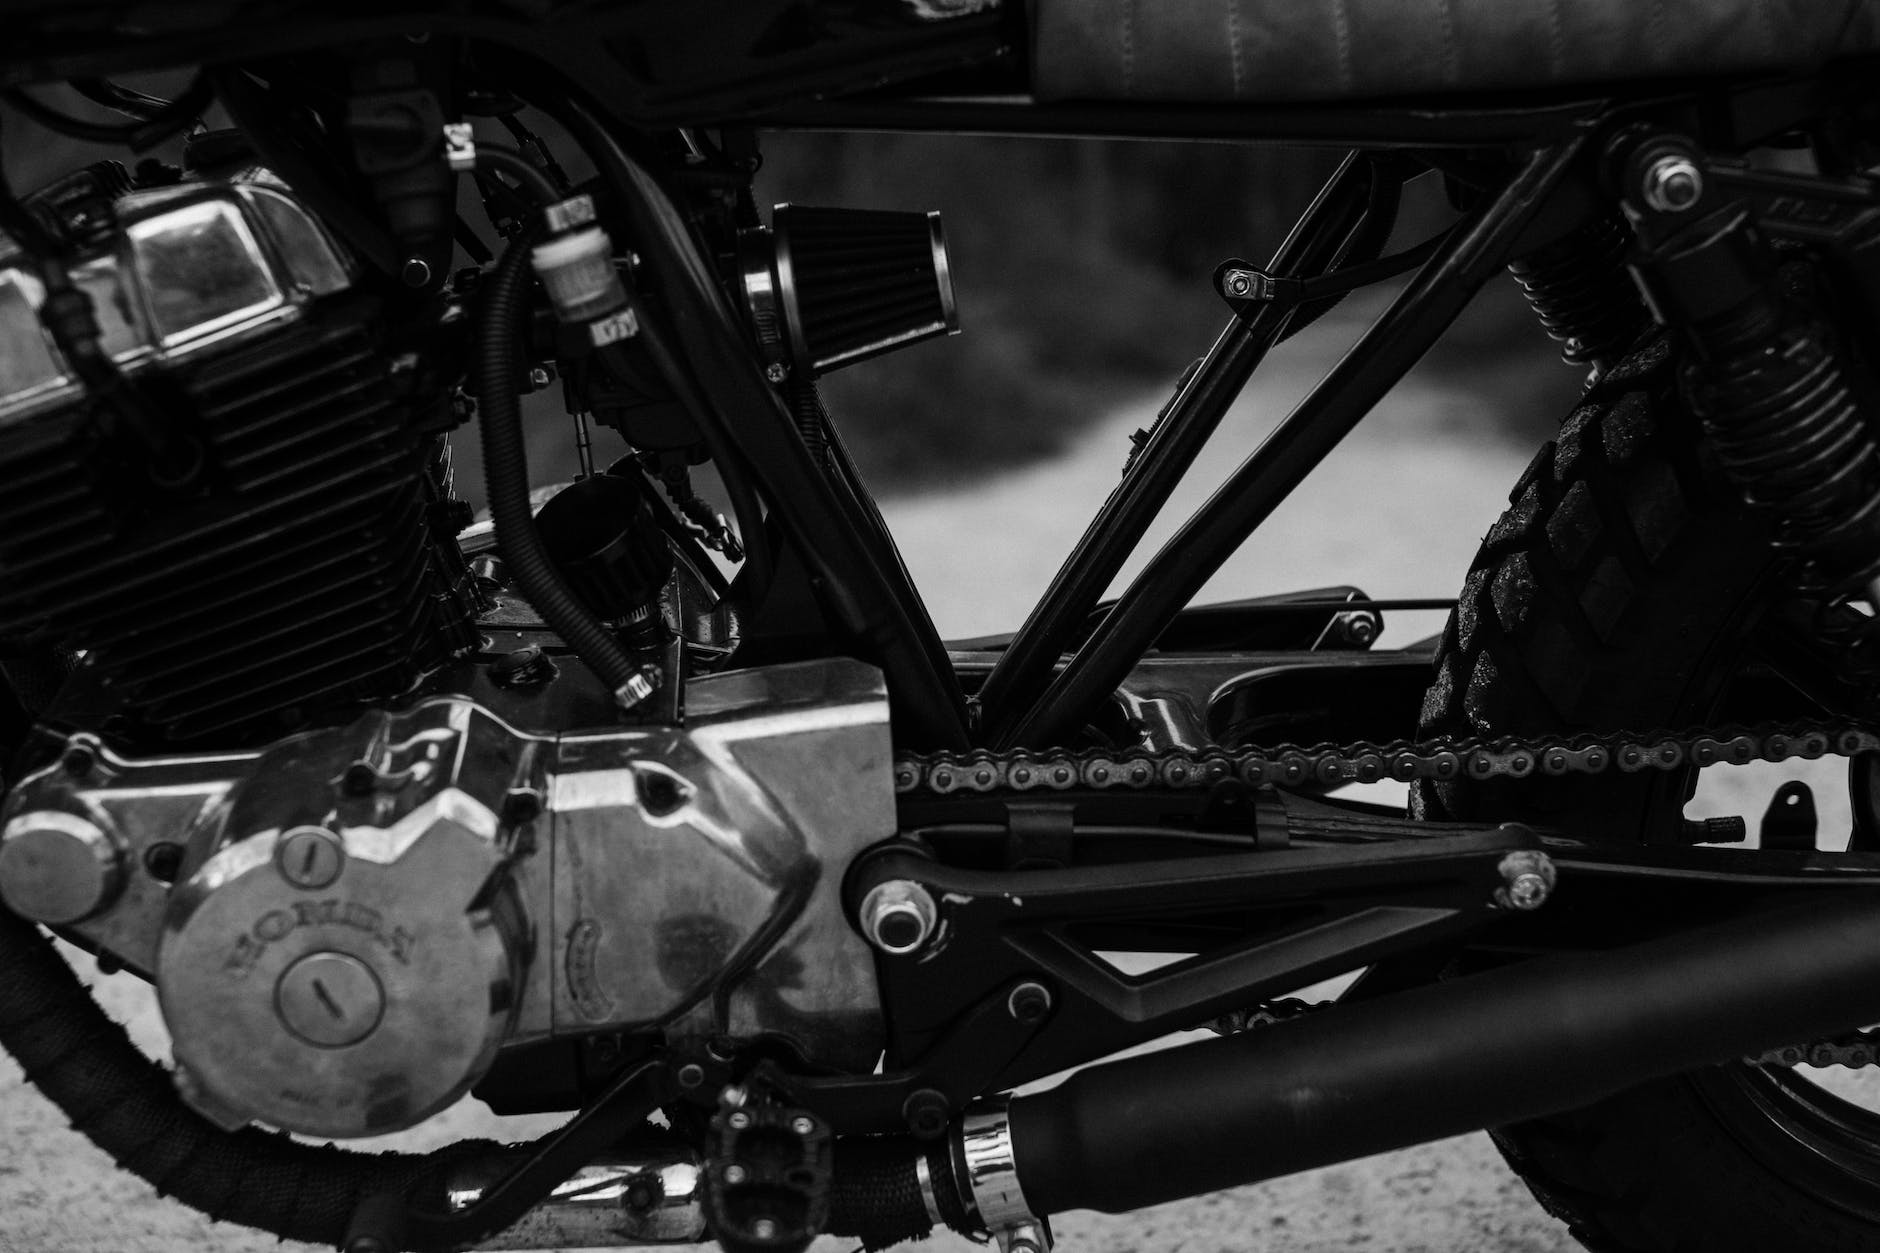 Les deux principales lois régissant les motos en France